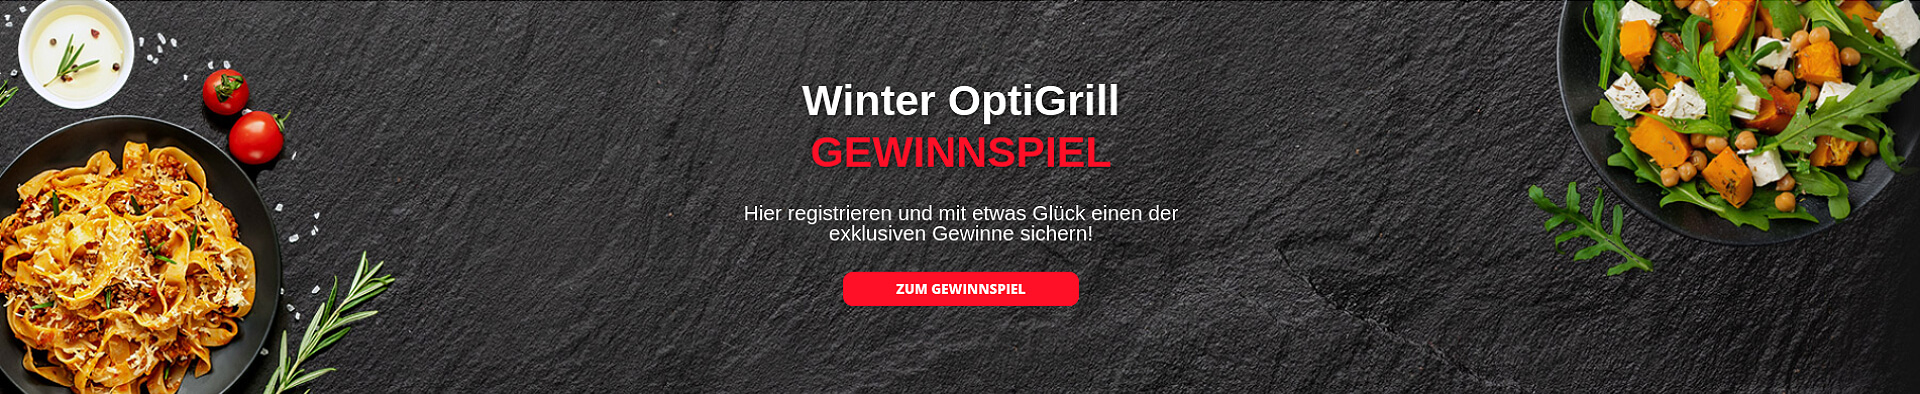 Winter OptGrill Gewinnspiel - jetzt mitmachen